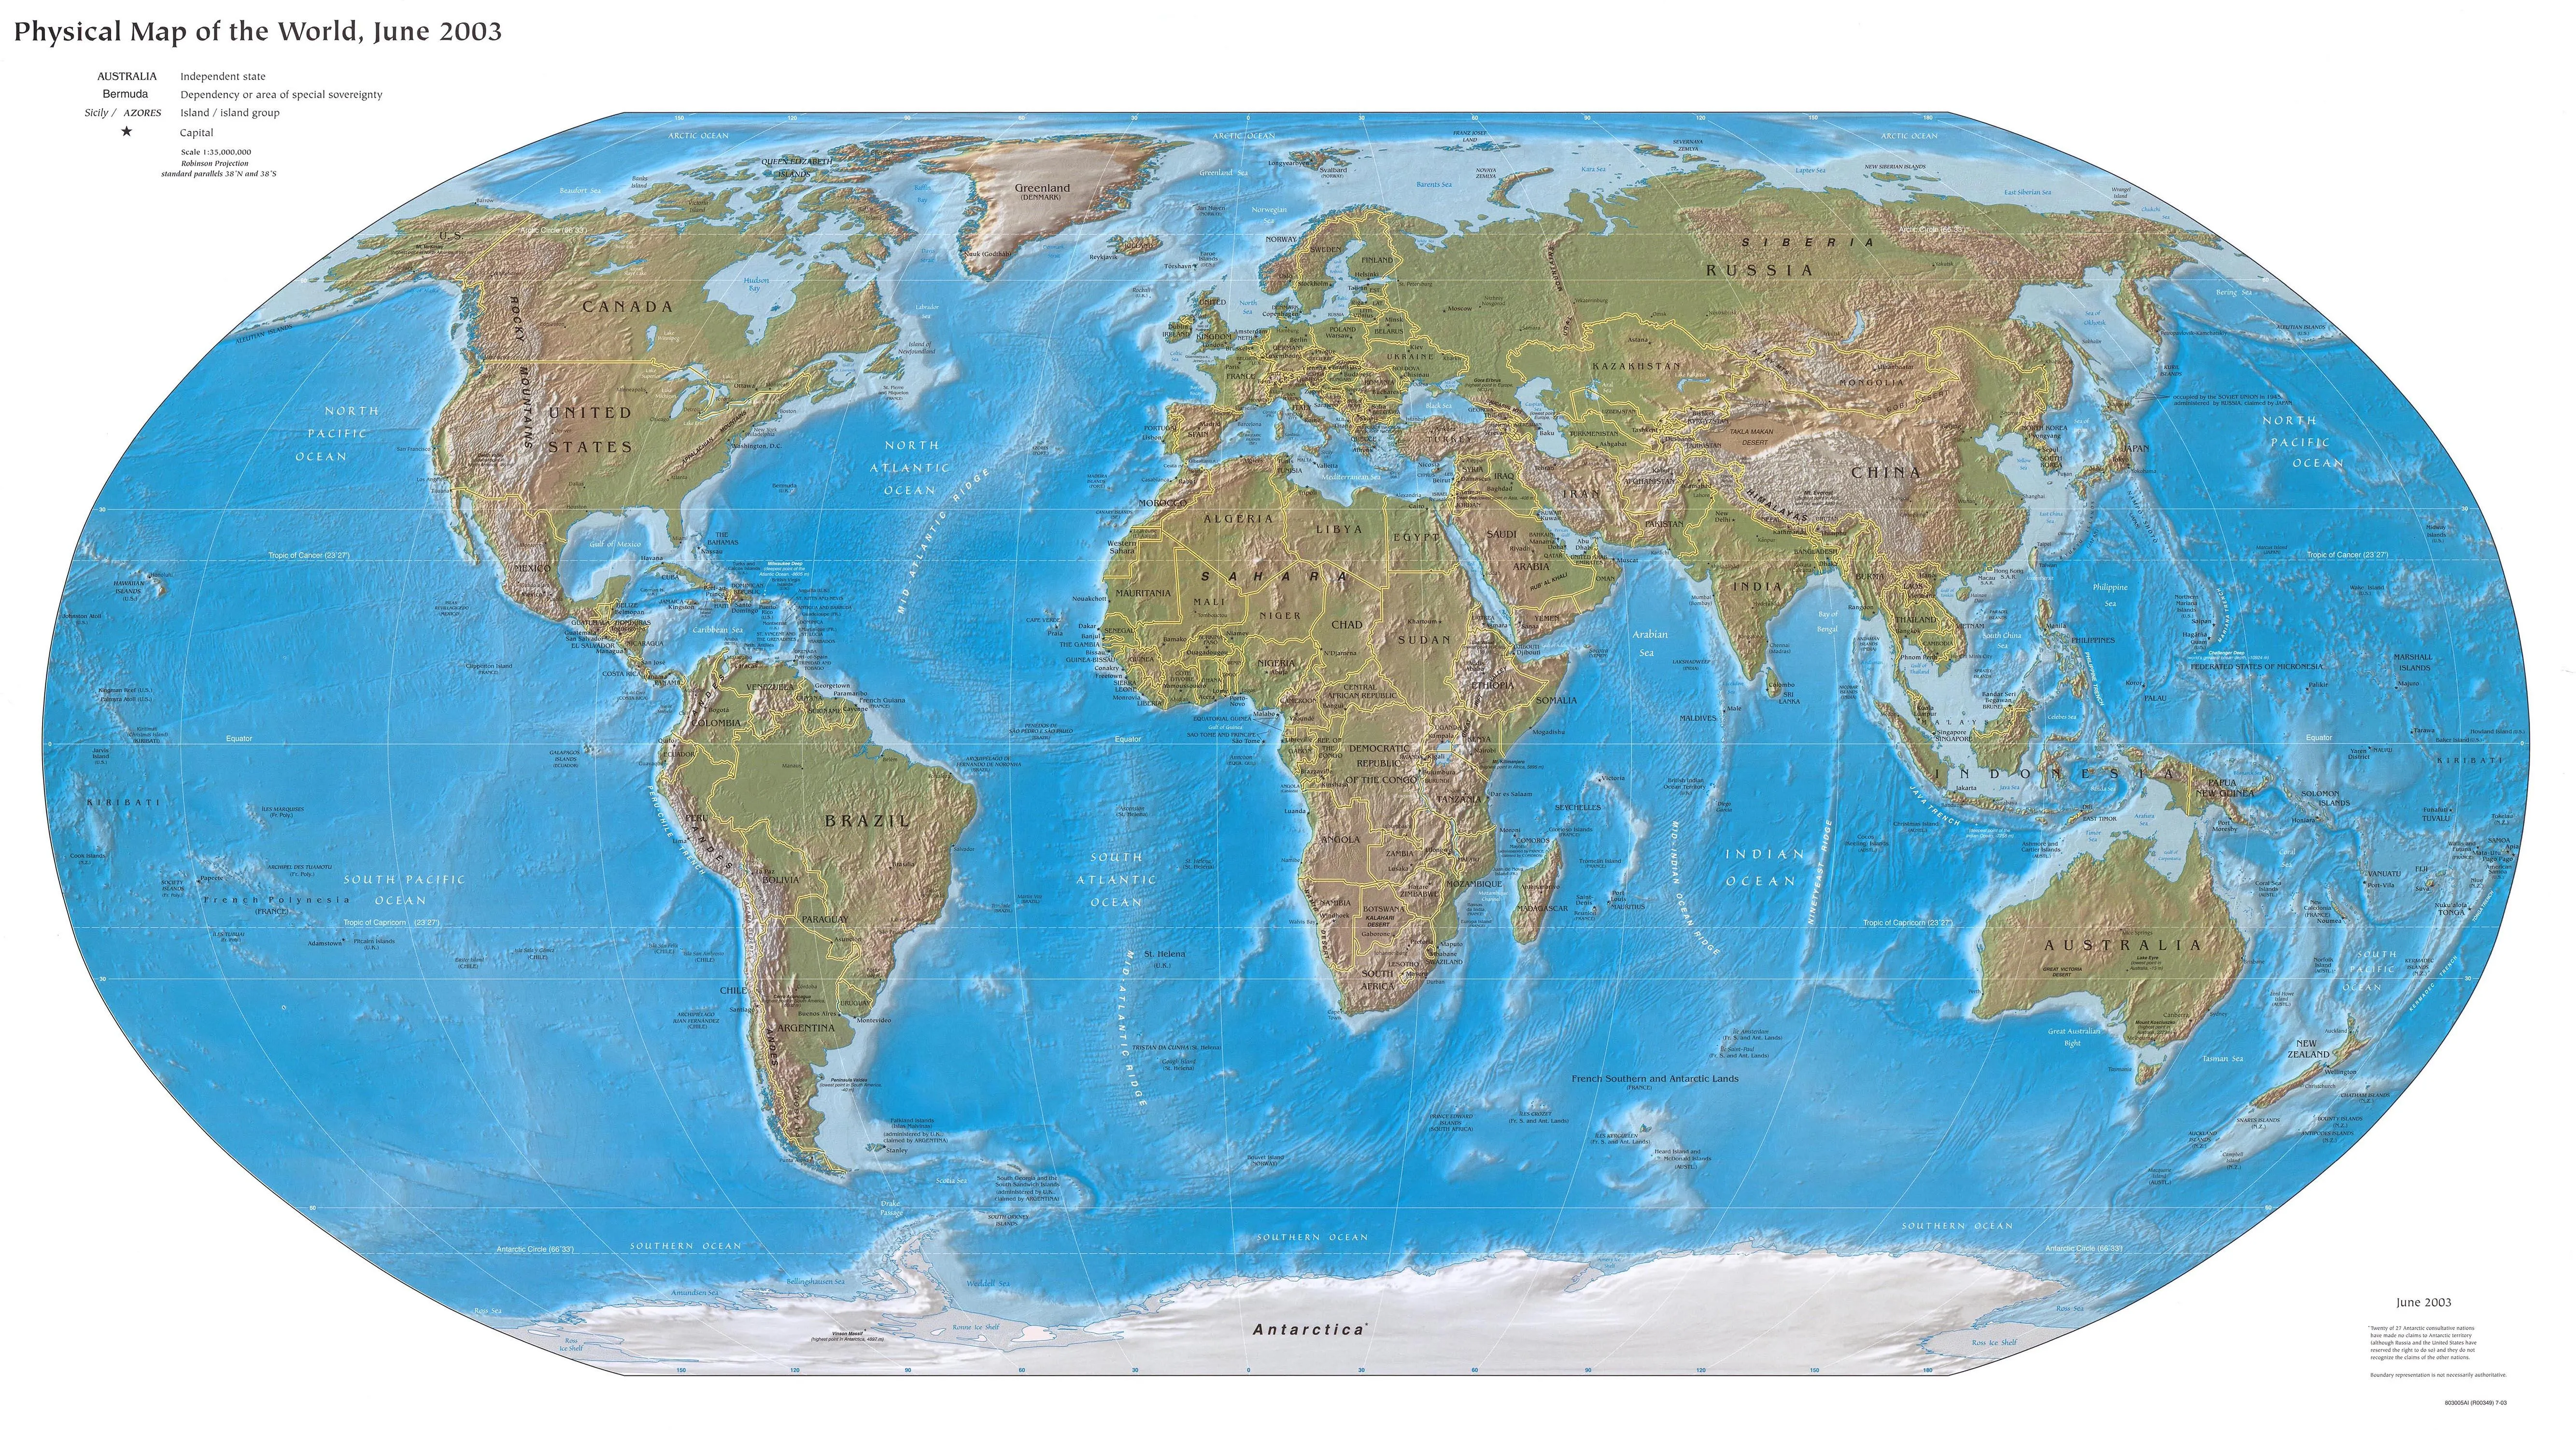 Mapa-Múndi - Continentes, Países e Estados - Cola da Web